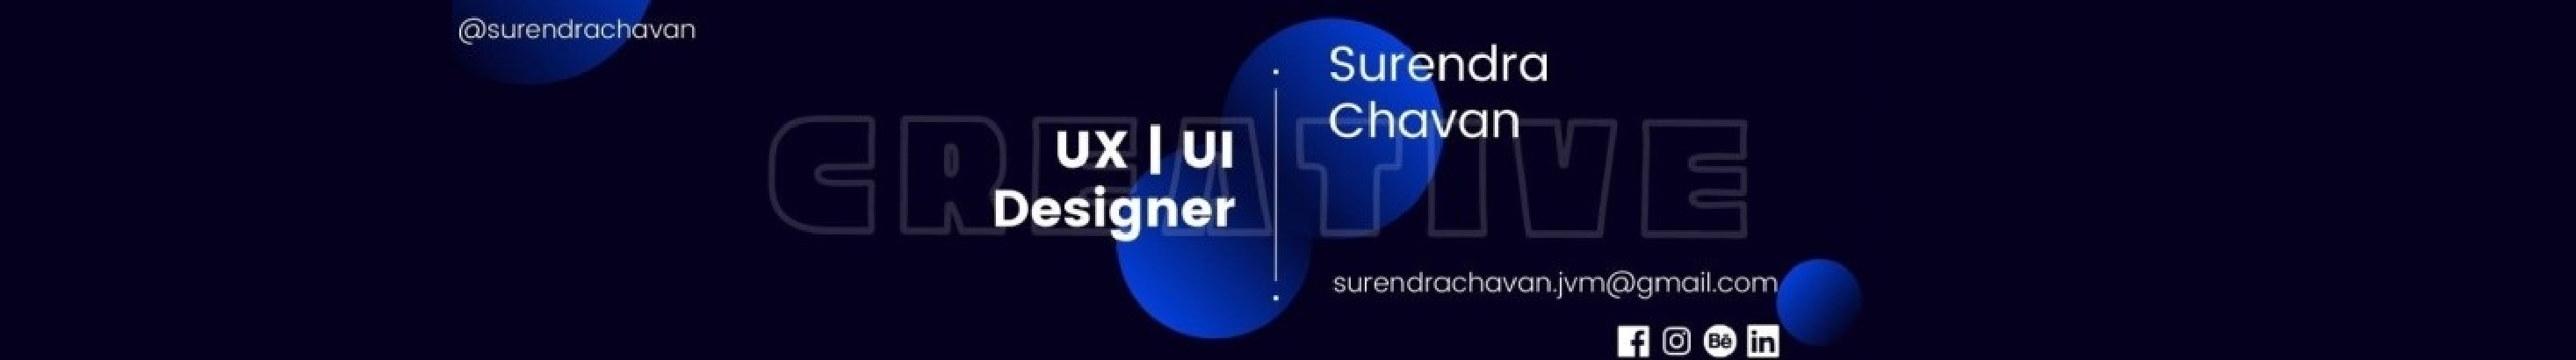 Surendra Chavan's profile banner